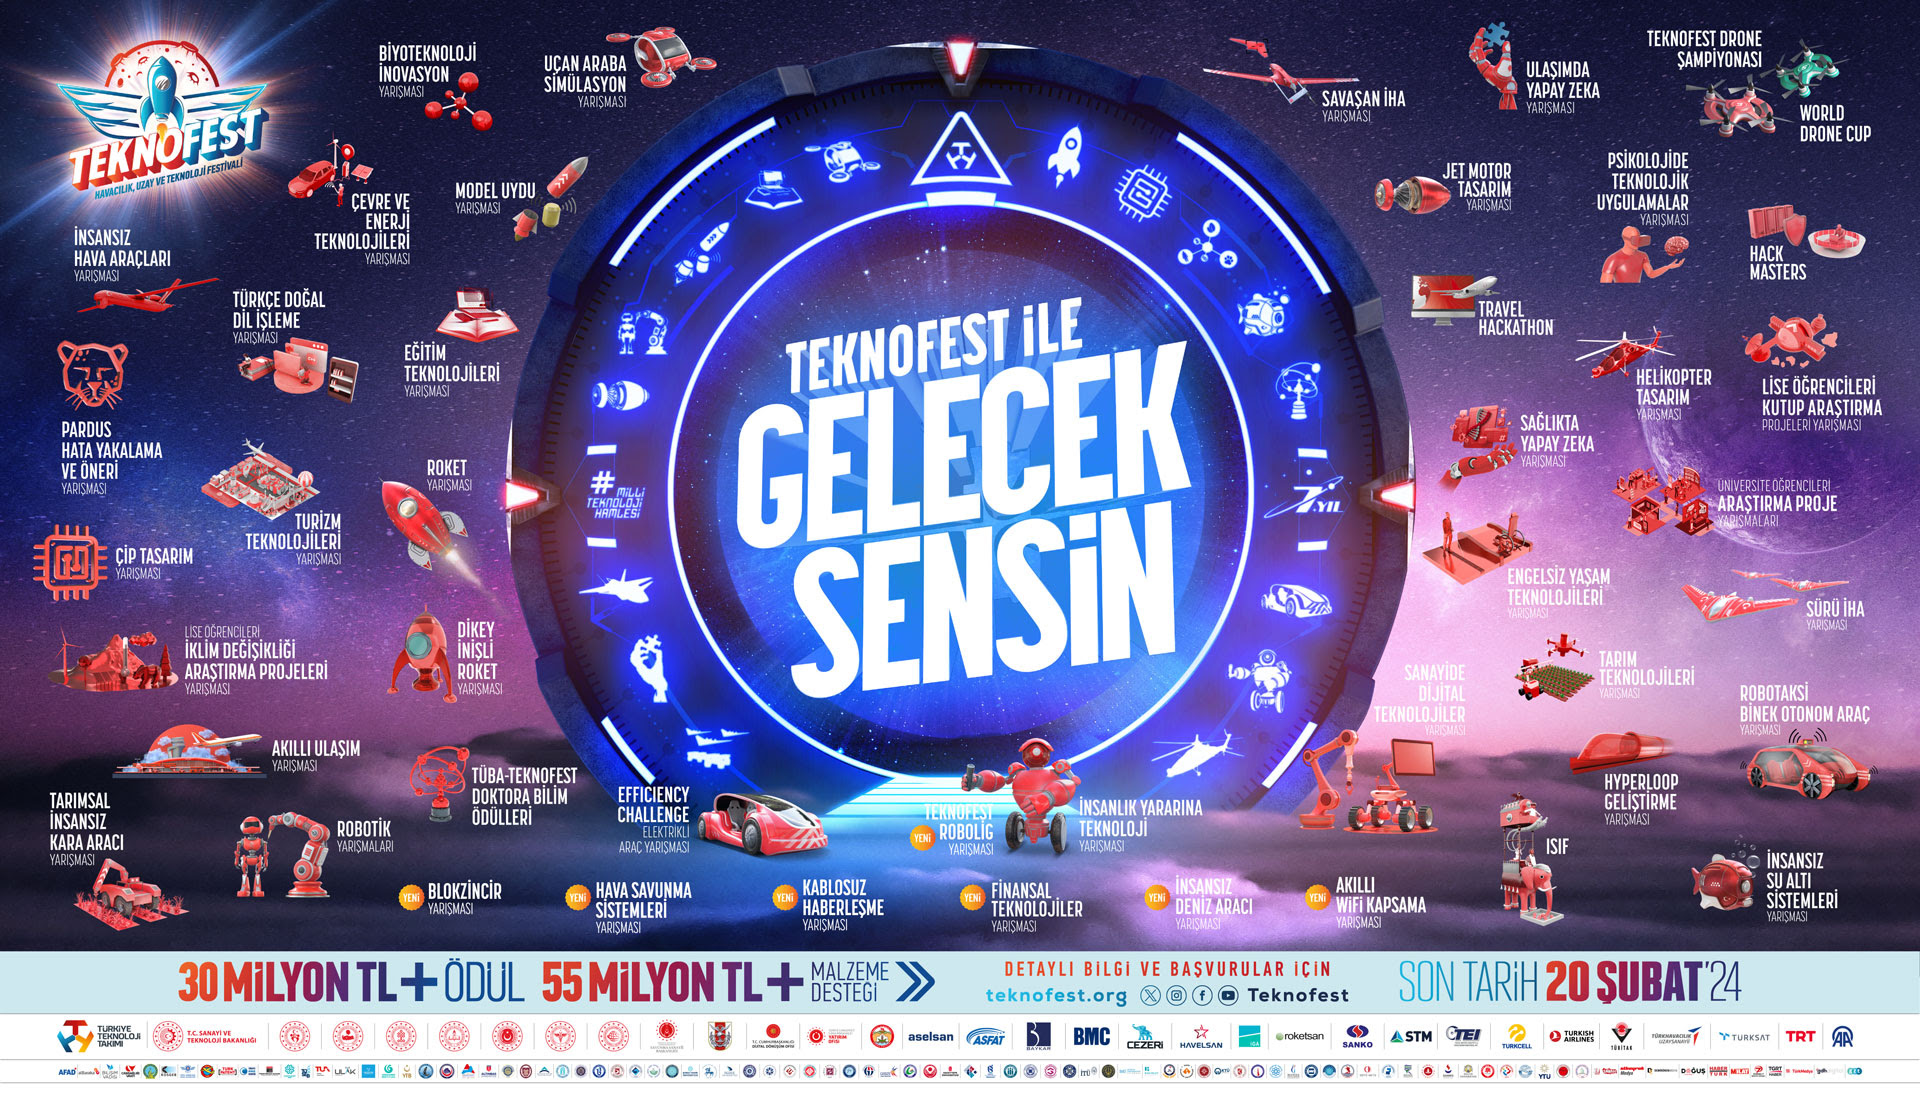 Adana Teknofest’e Rekor Yarışmacı Başvurusu